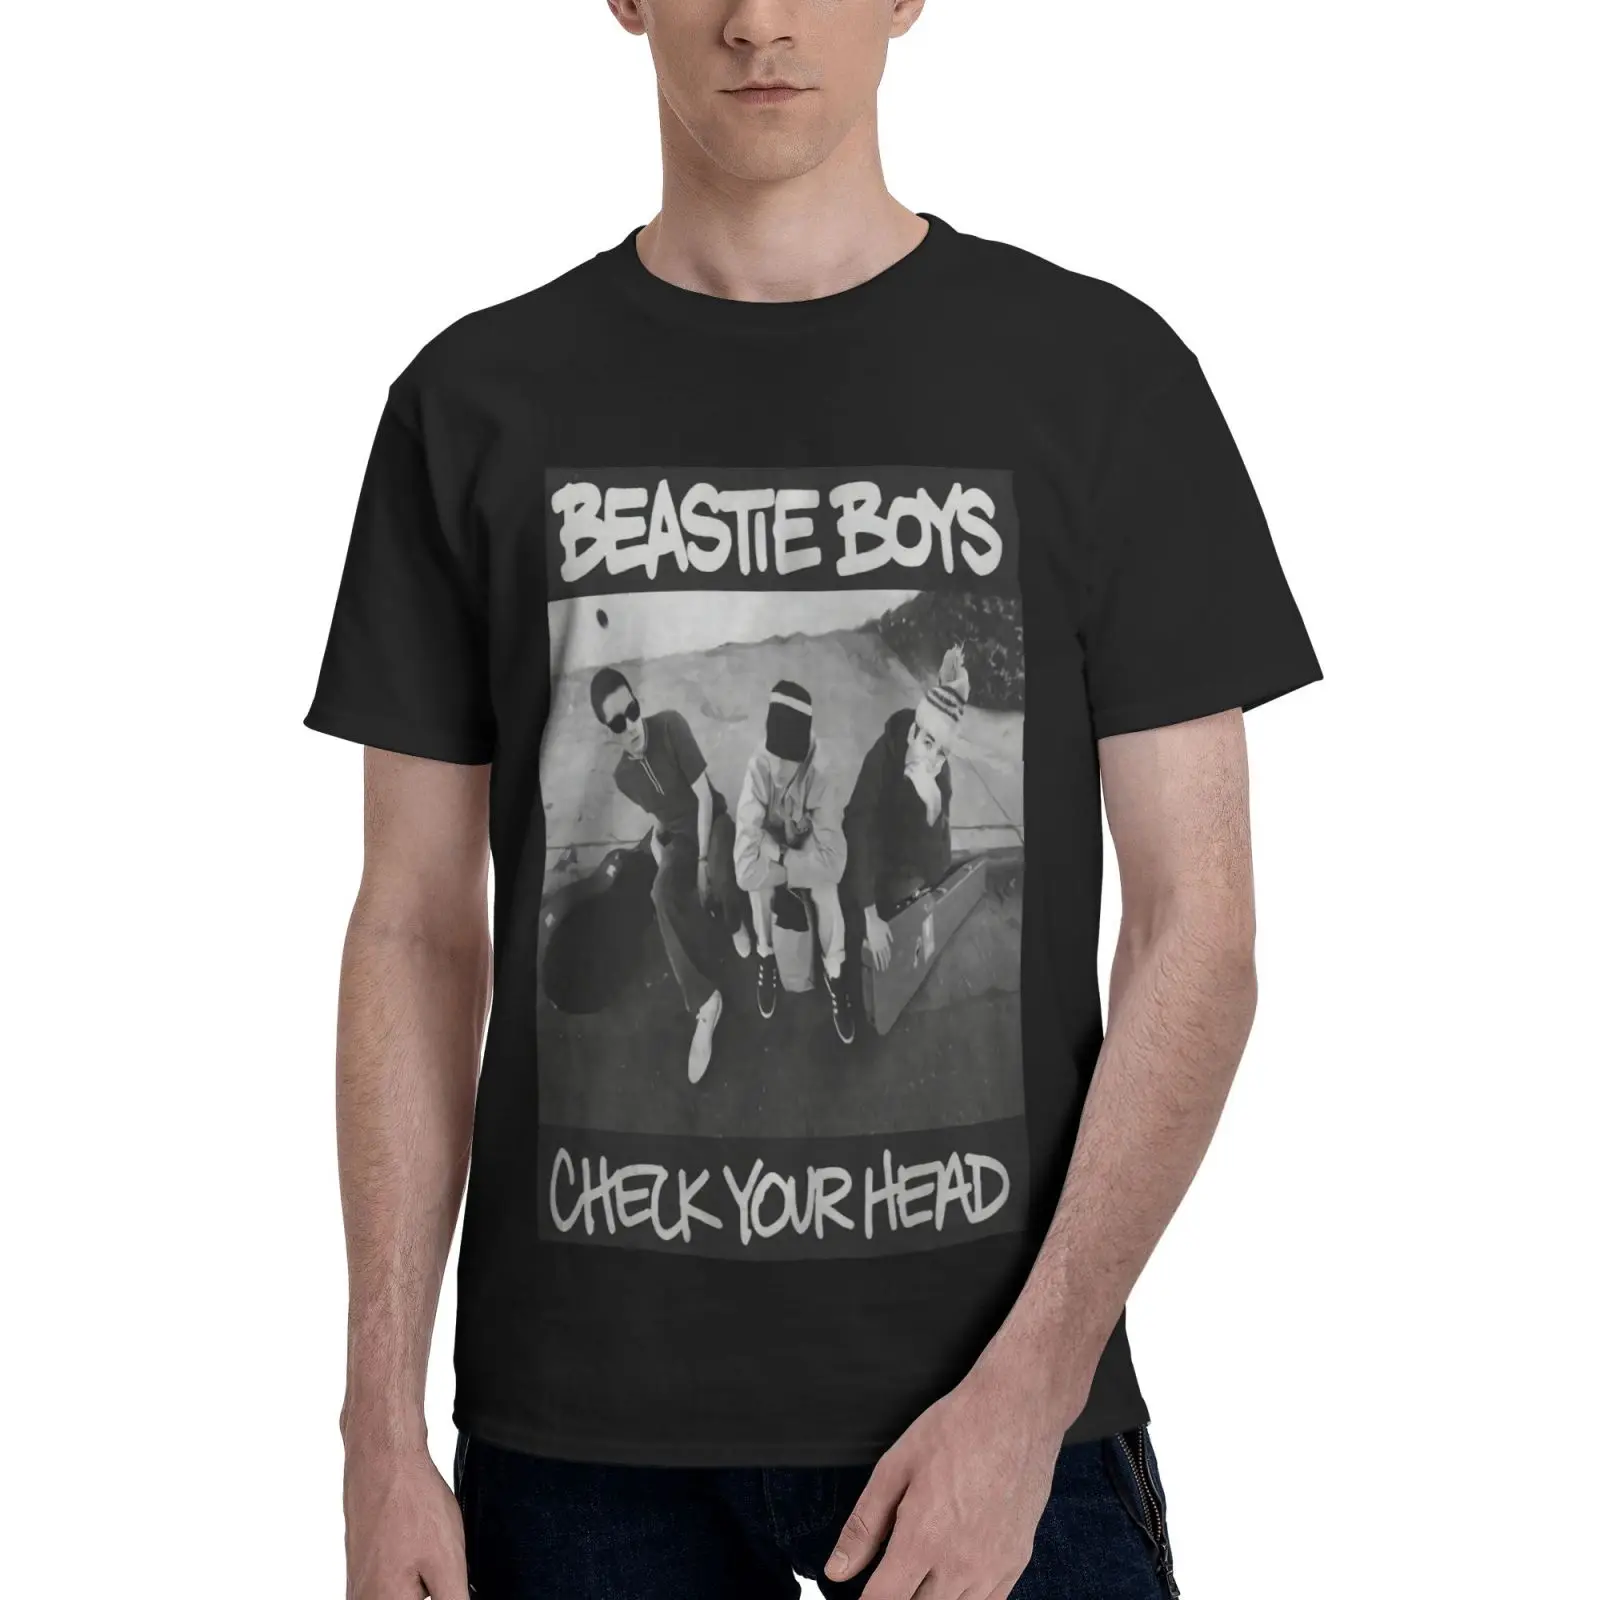 

Мужская футболка Beastie с надписью «проверьте вашу голову», футболки для мужчин, женская футболка, мужская рубашка, женская футболка оверсайз